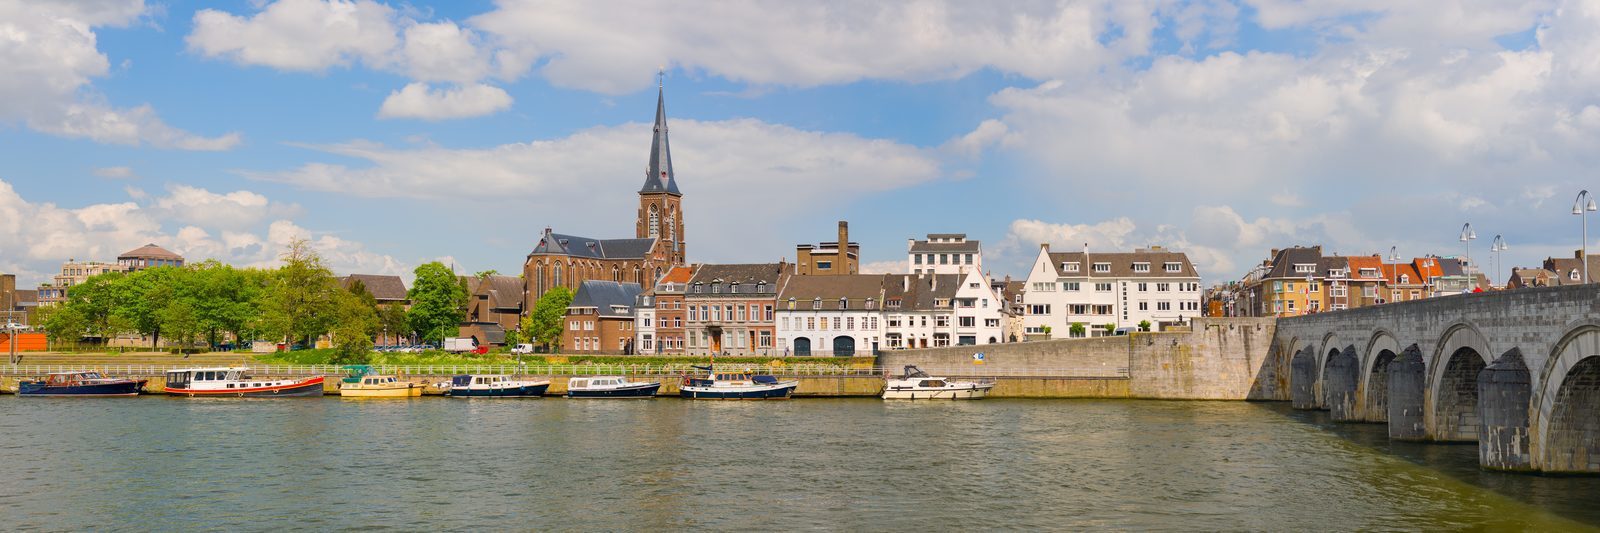 Maastricht Wochenende